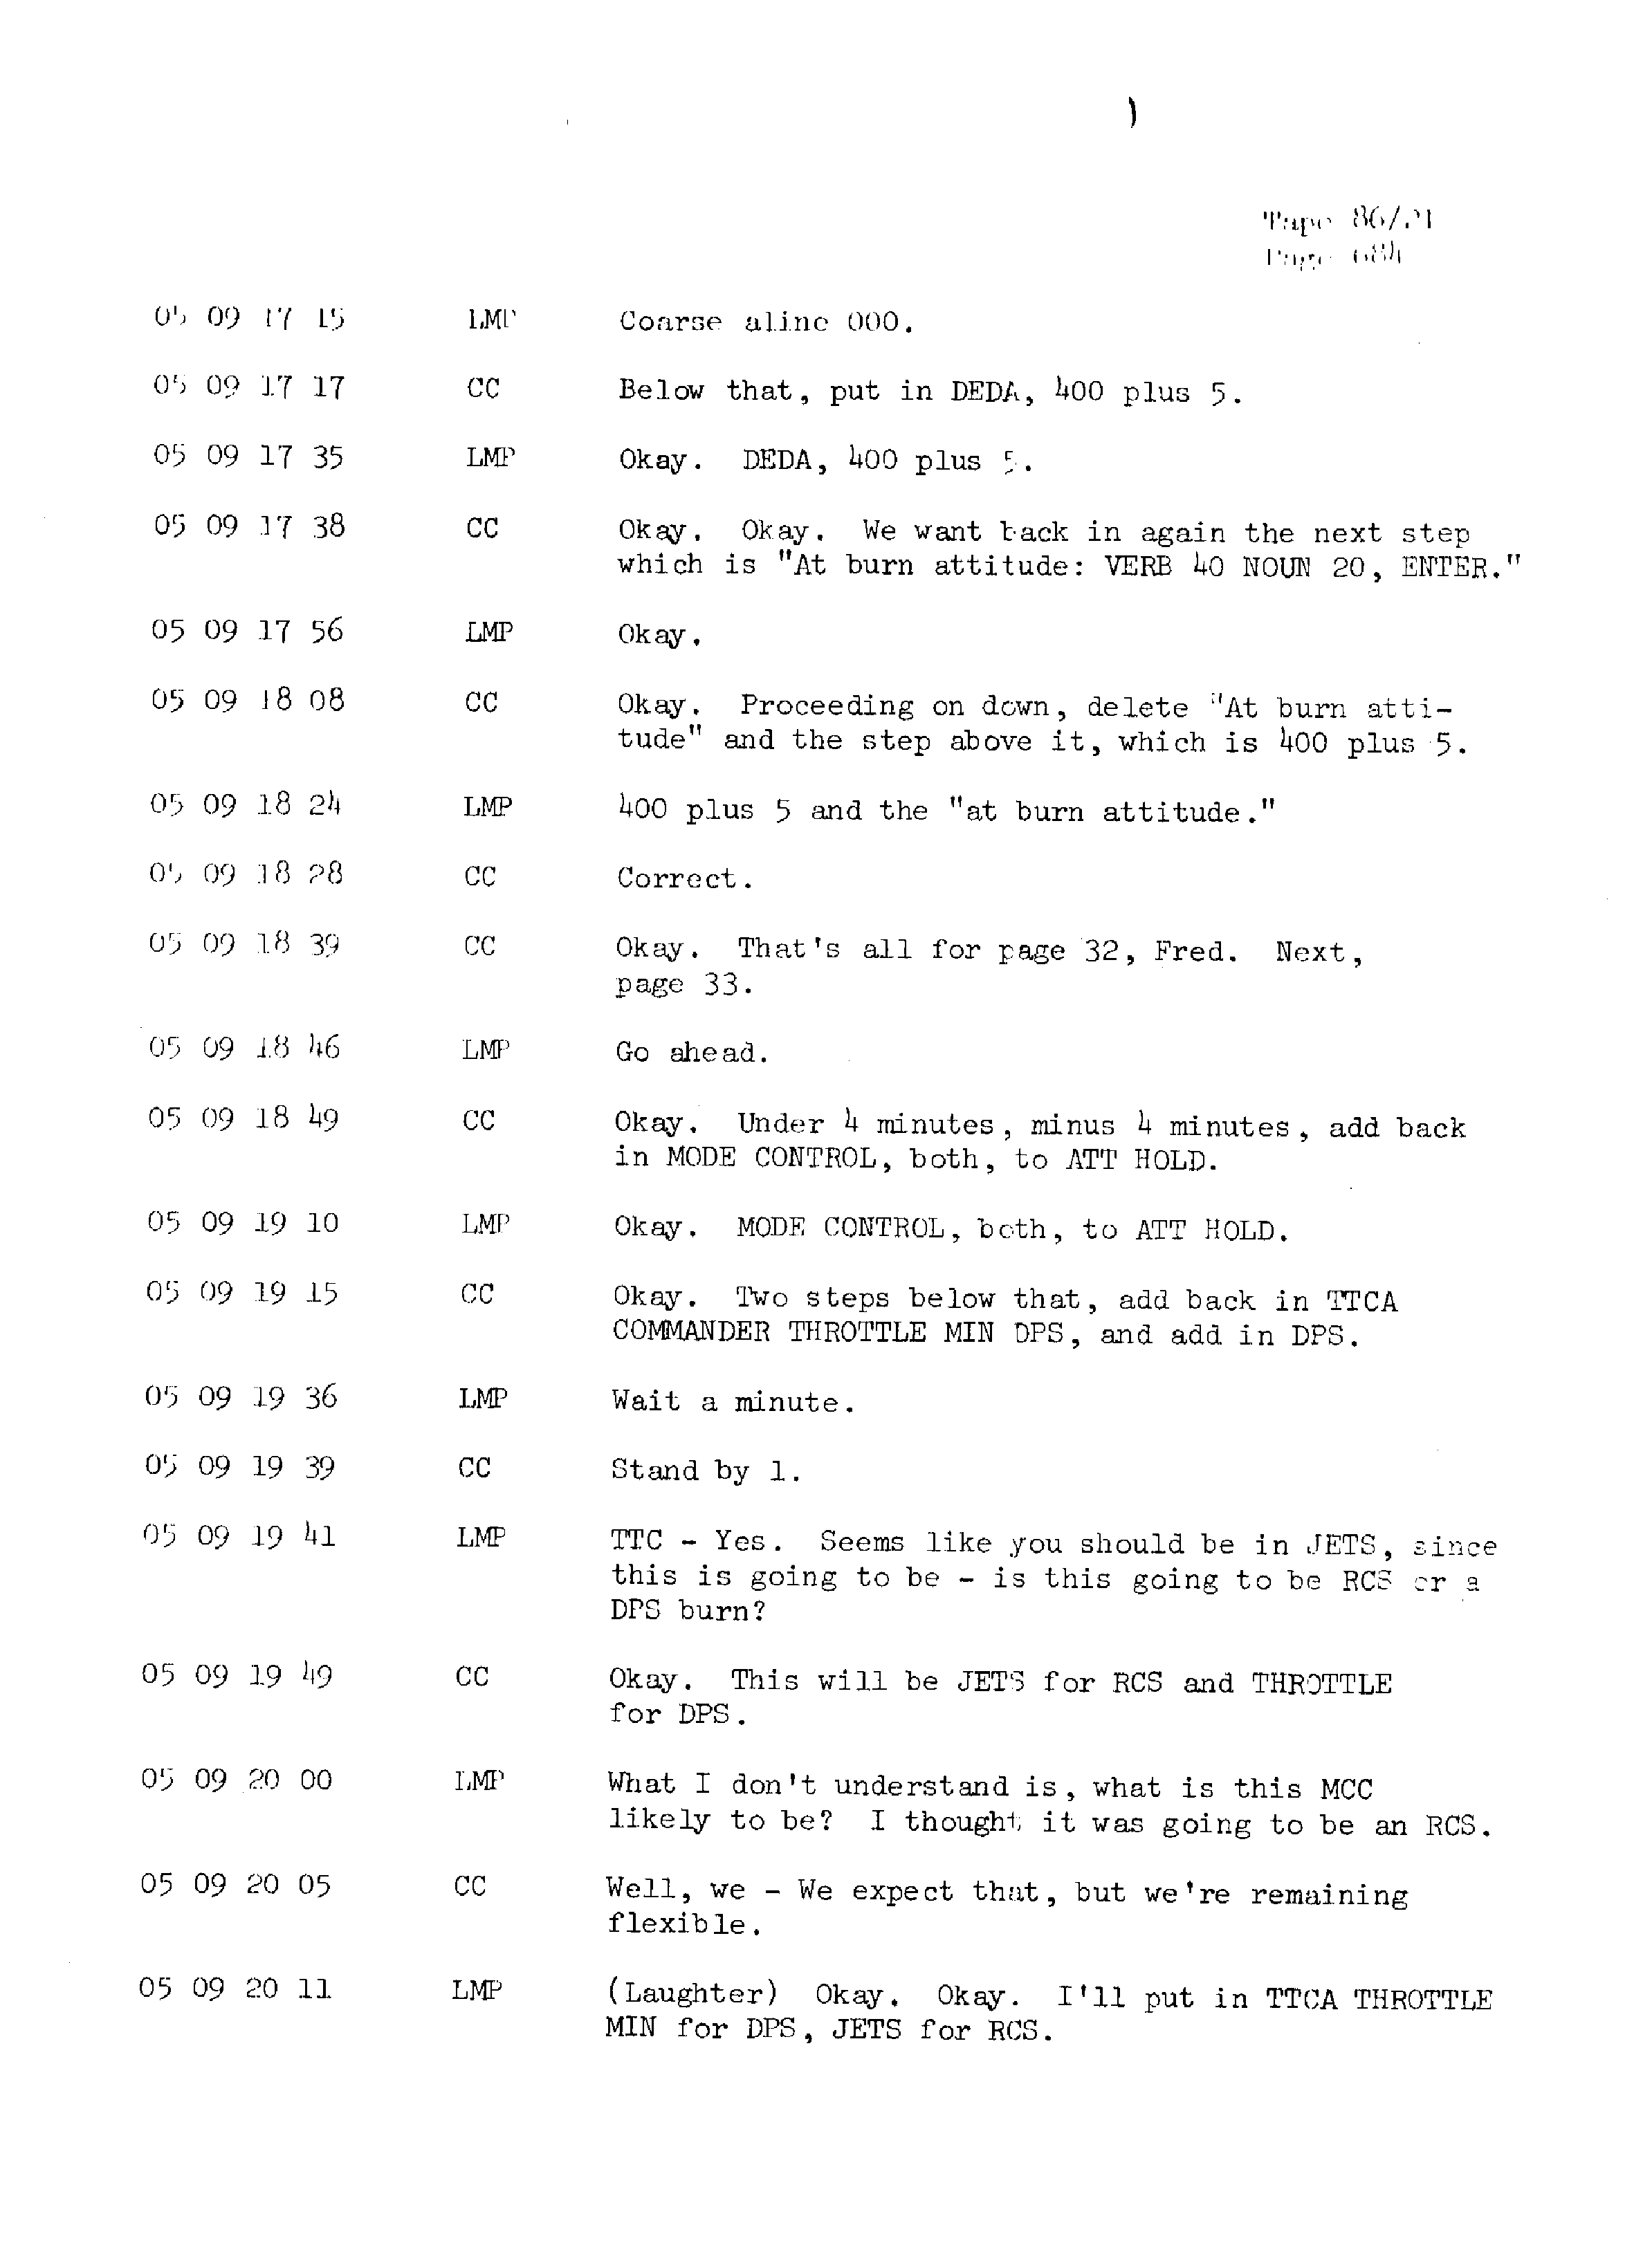 Page 691 of Apollo 13’s original transcript